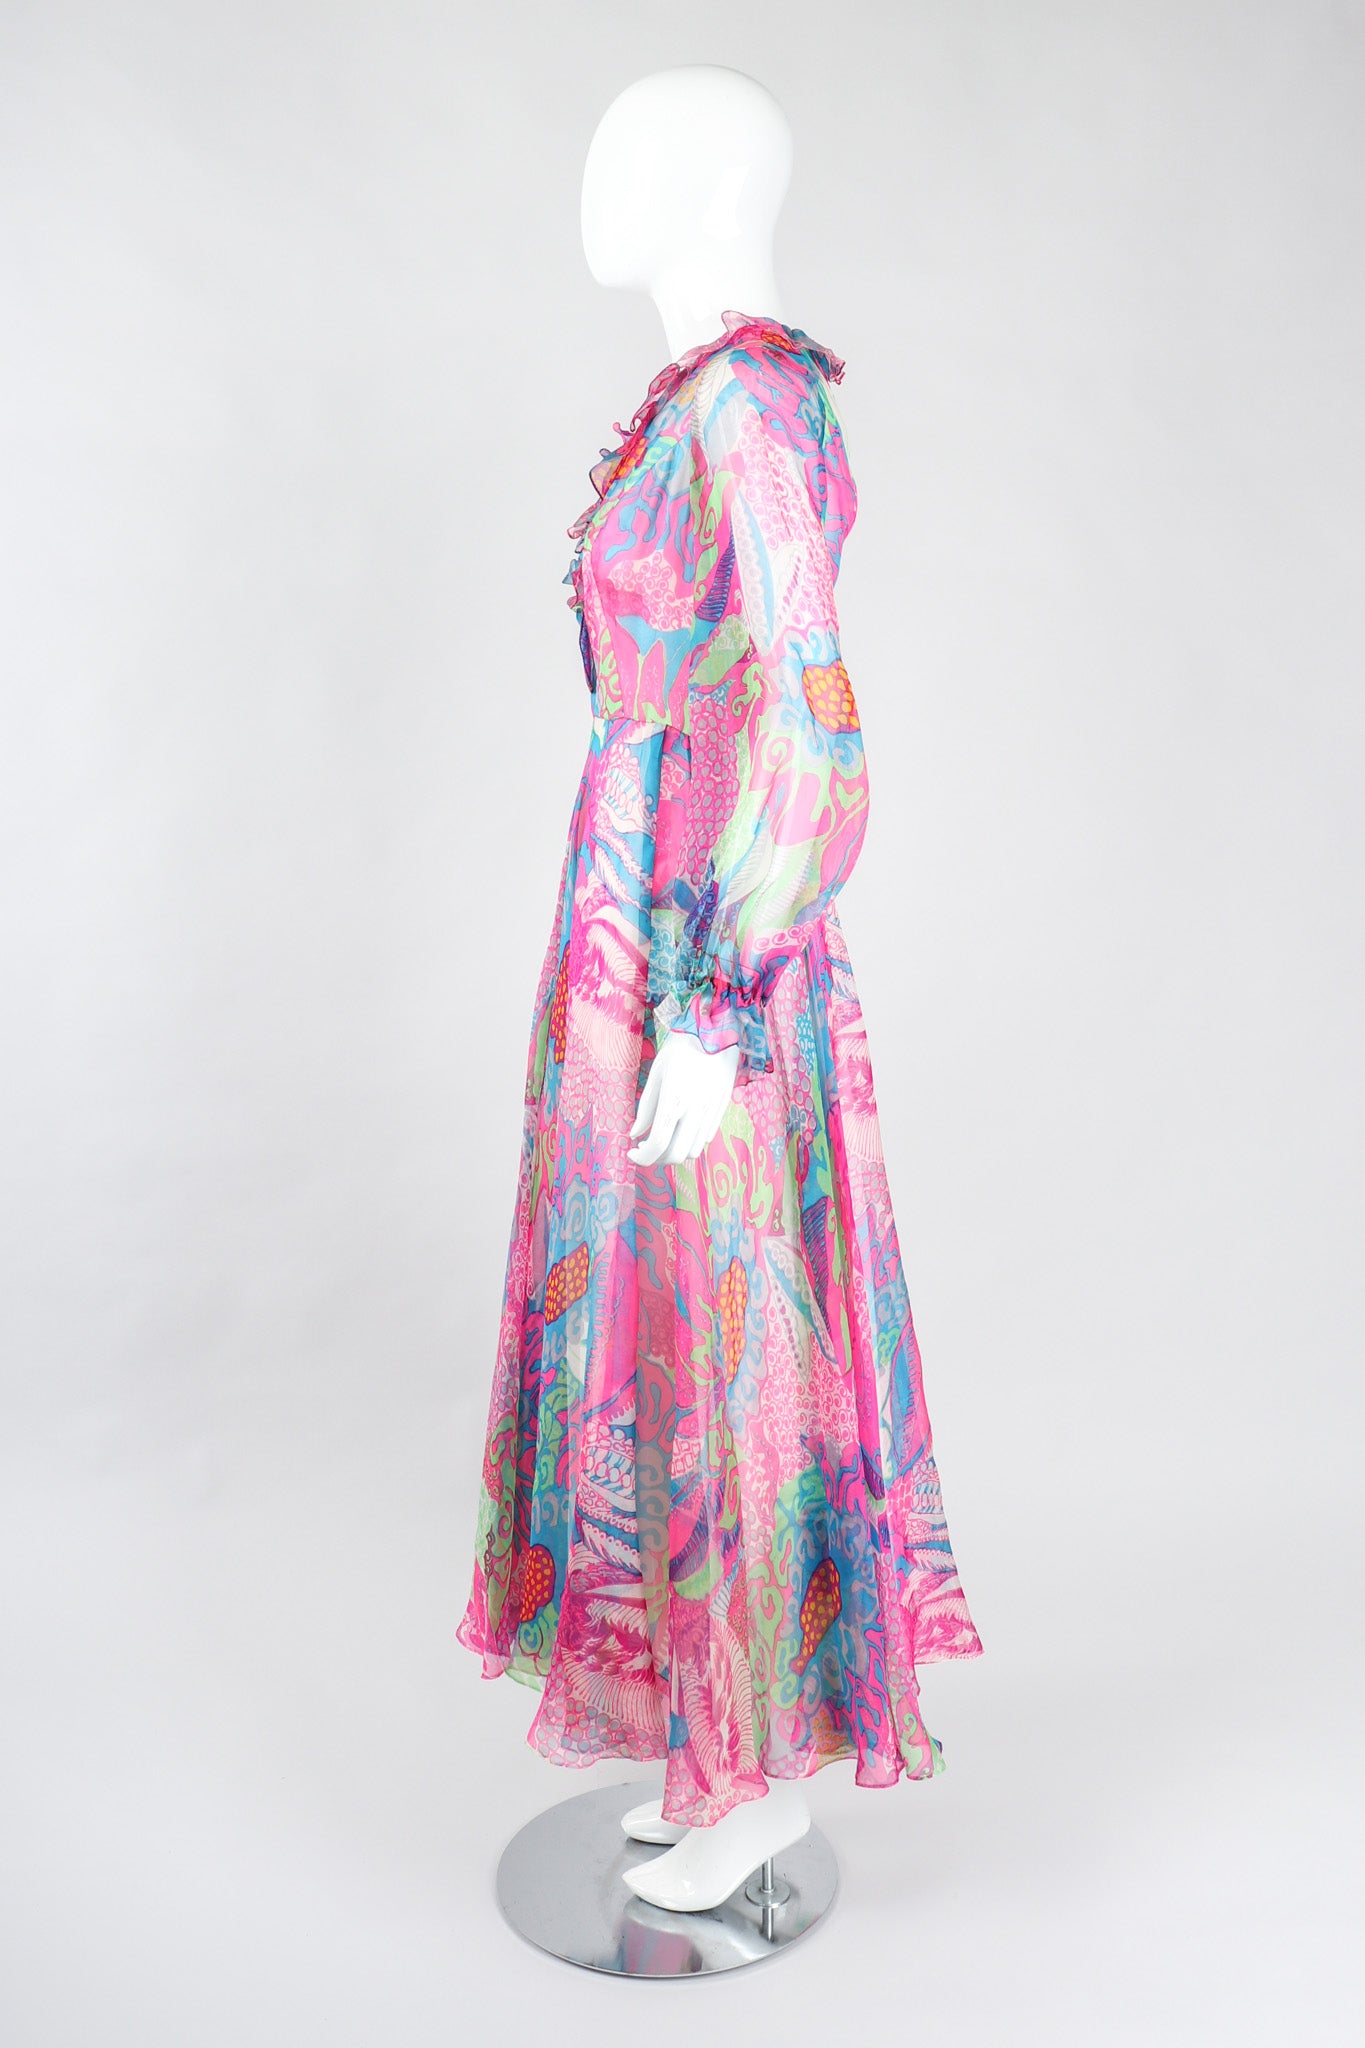 Recess Los Angeles Vintage Nat Kaplan I.Magnin Sheer Psychedelic Neon Mod Floral Dress